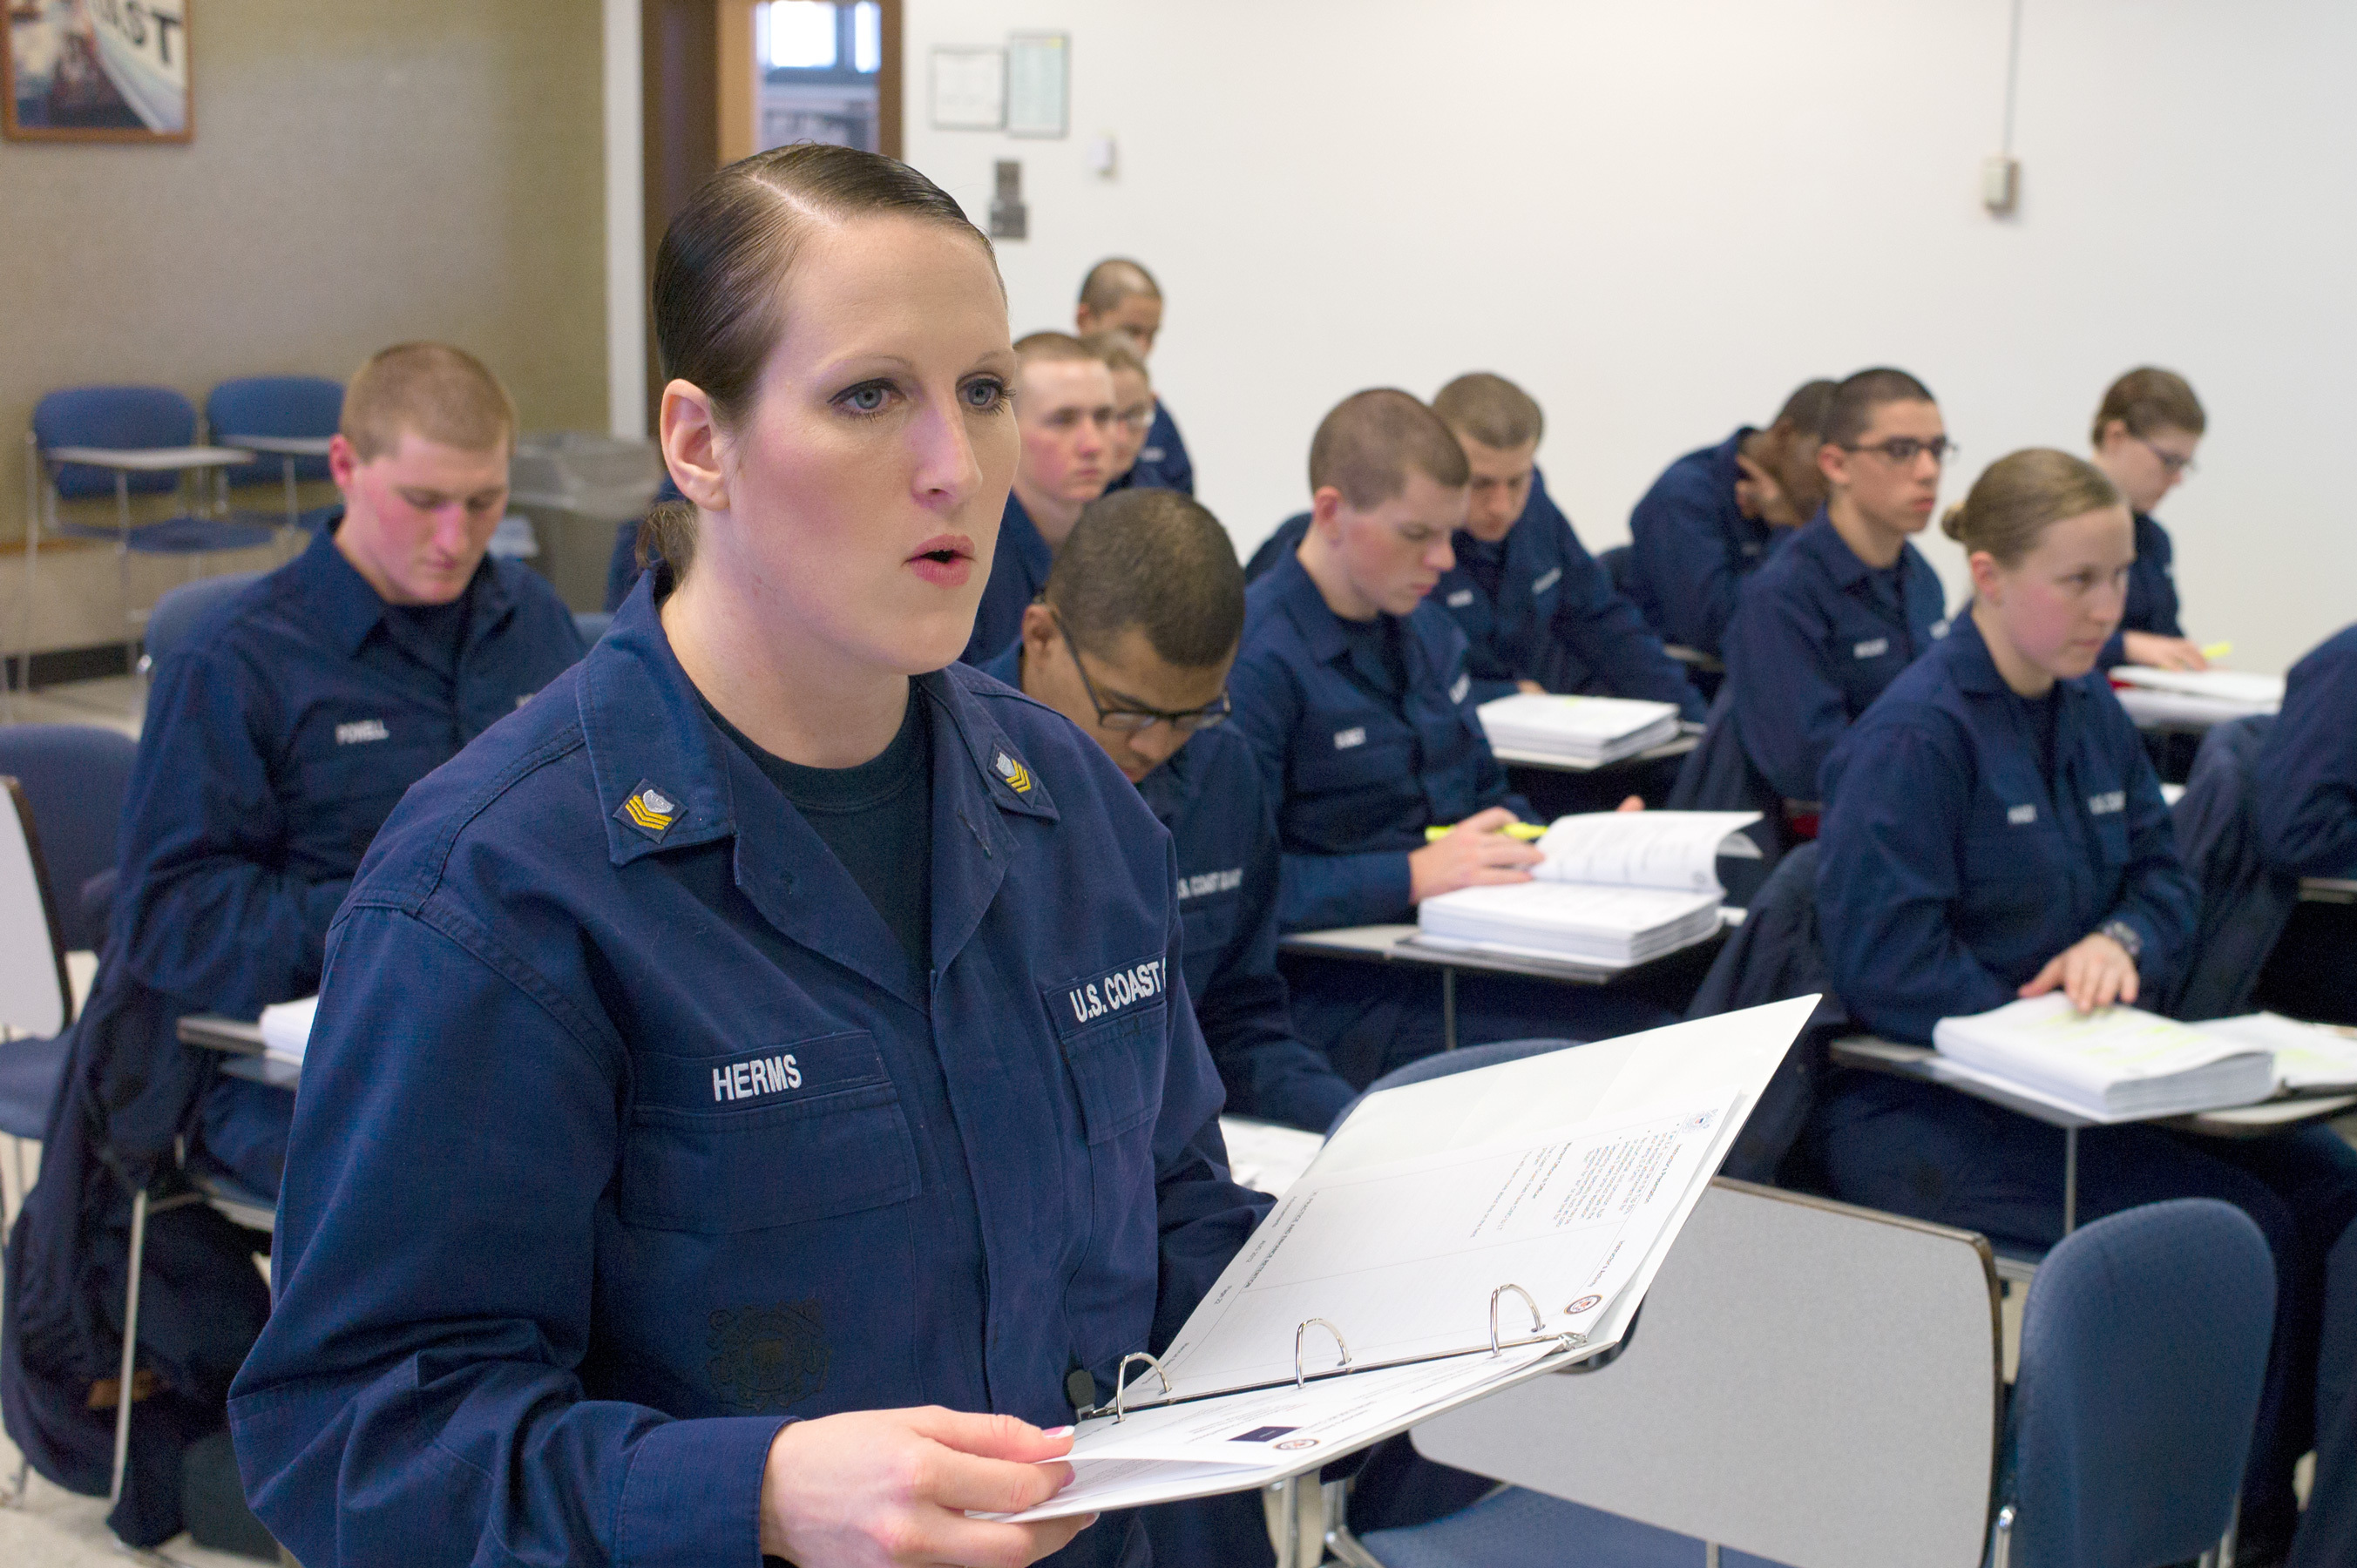 Coast guard training photo